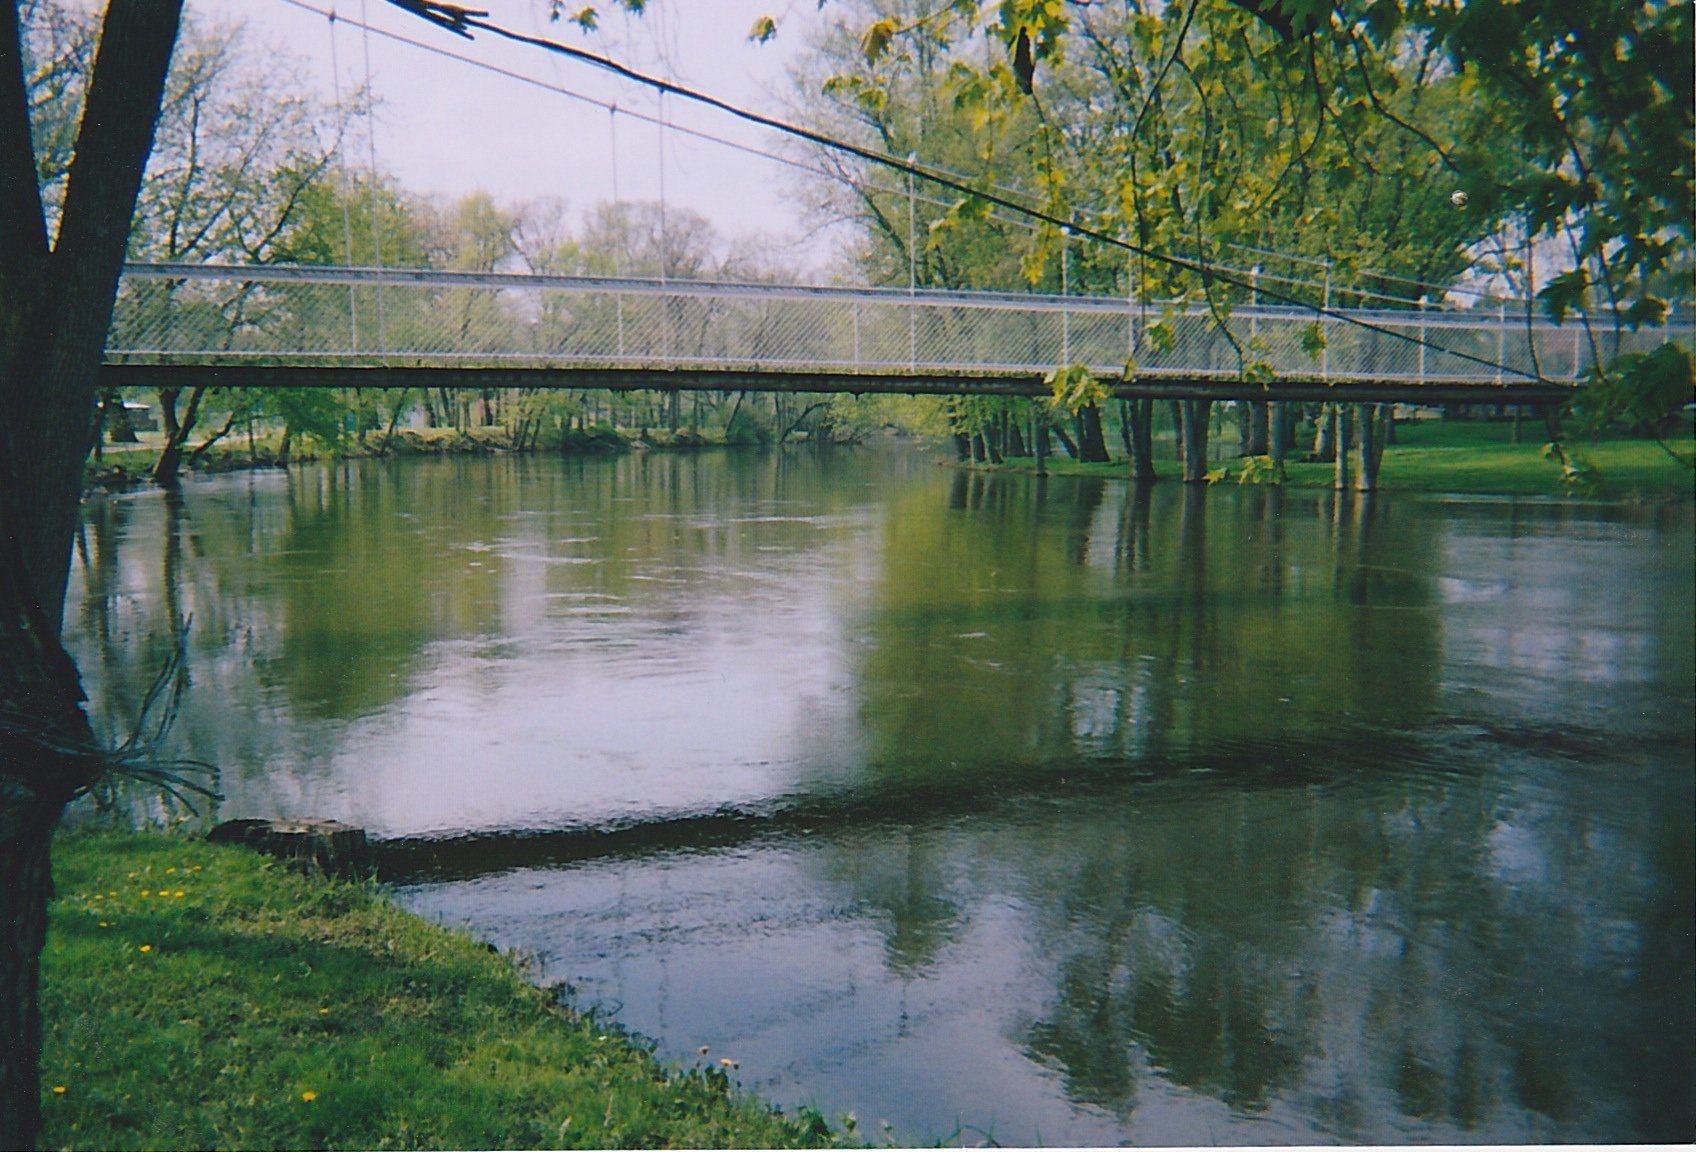 Swinging bridge winamac